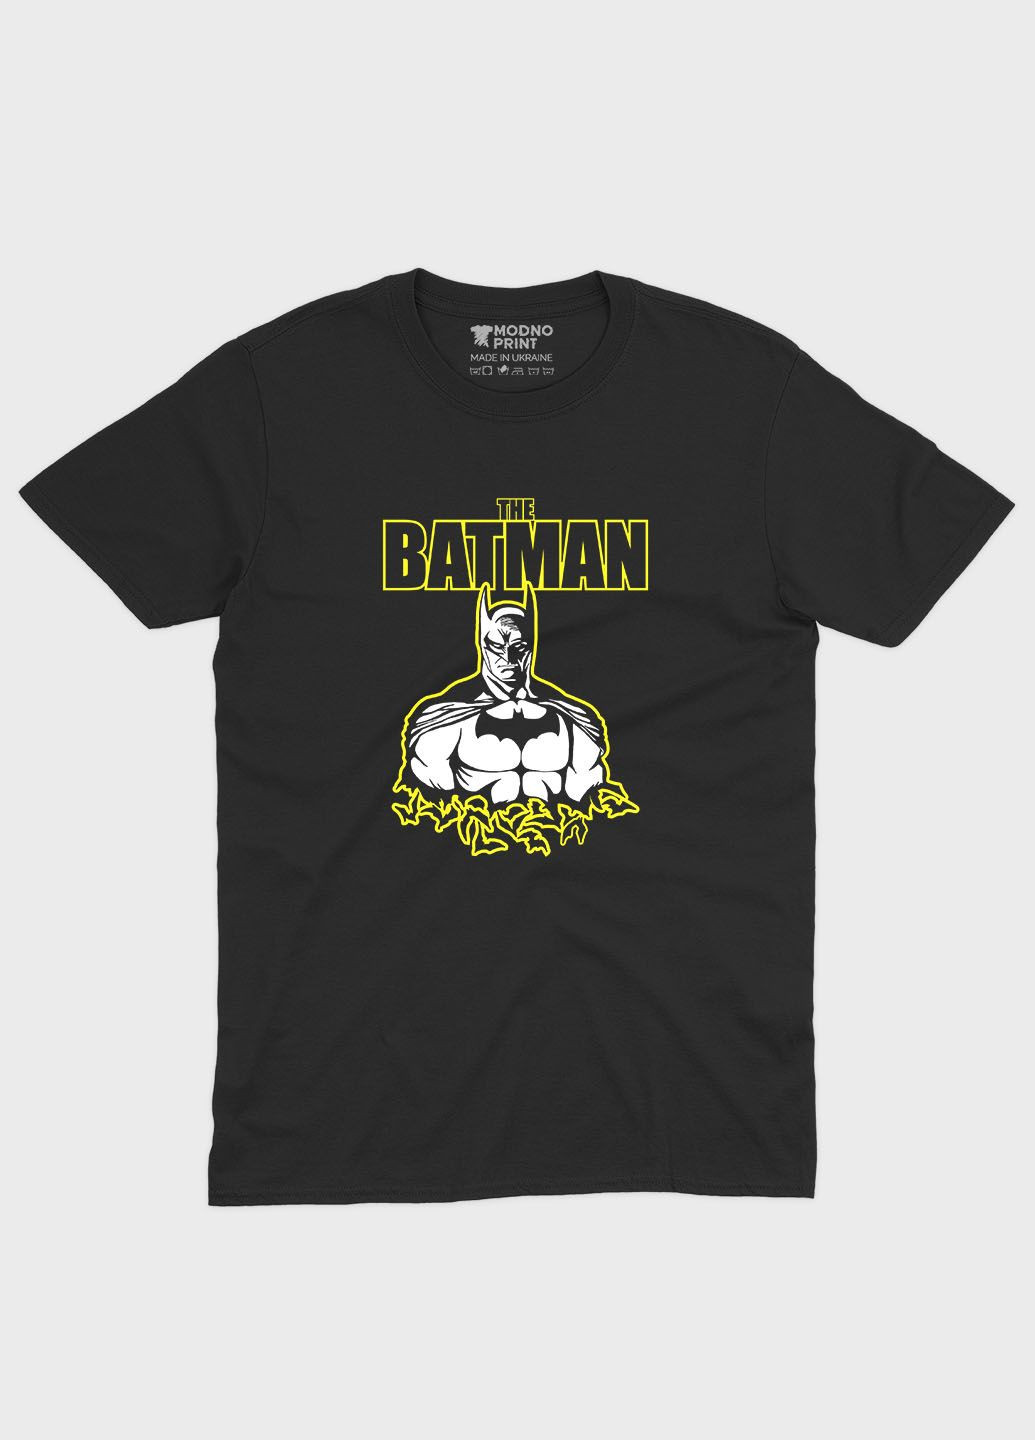 Чорна демісезонна футболка для хлопчика з принтом супергероя - бетмен (ts001-1-bl-006-003-015-b) Modno